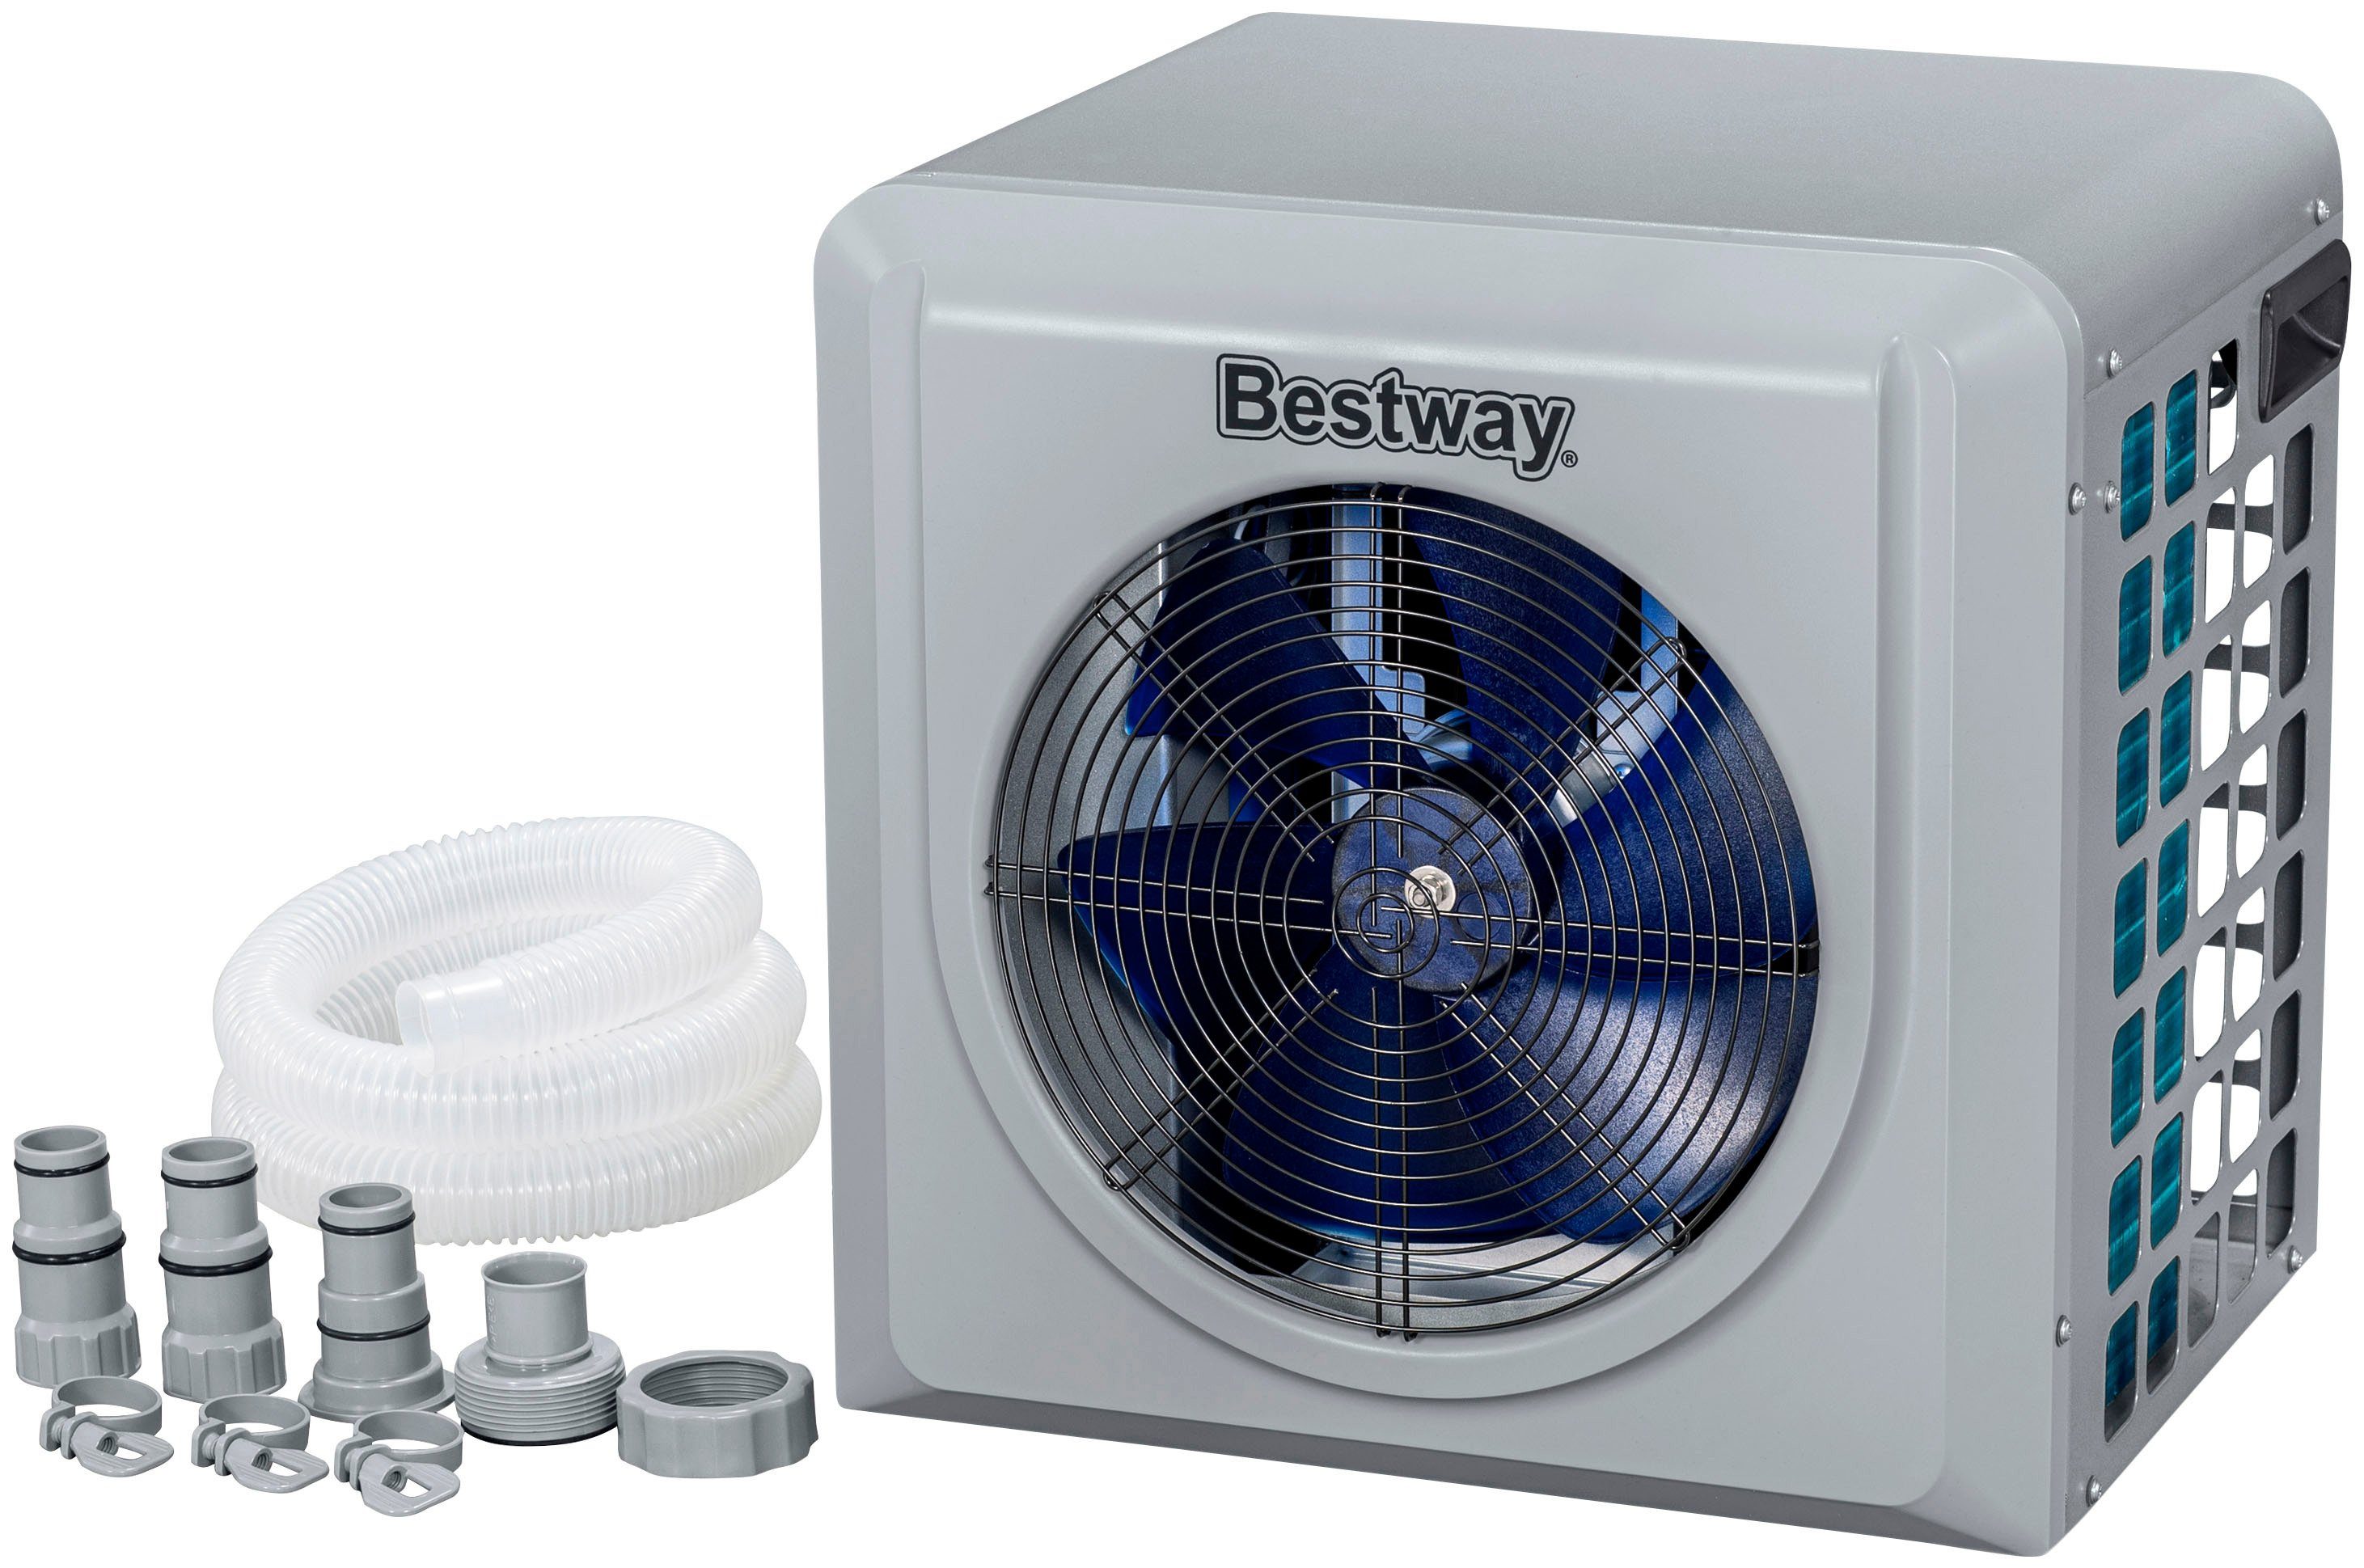 Bestway Pool-Wärmepumpe Flowclear™, Poolheizung Air Energy, 4.400 W